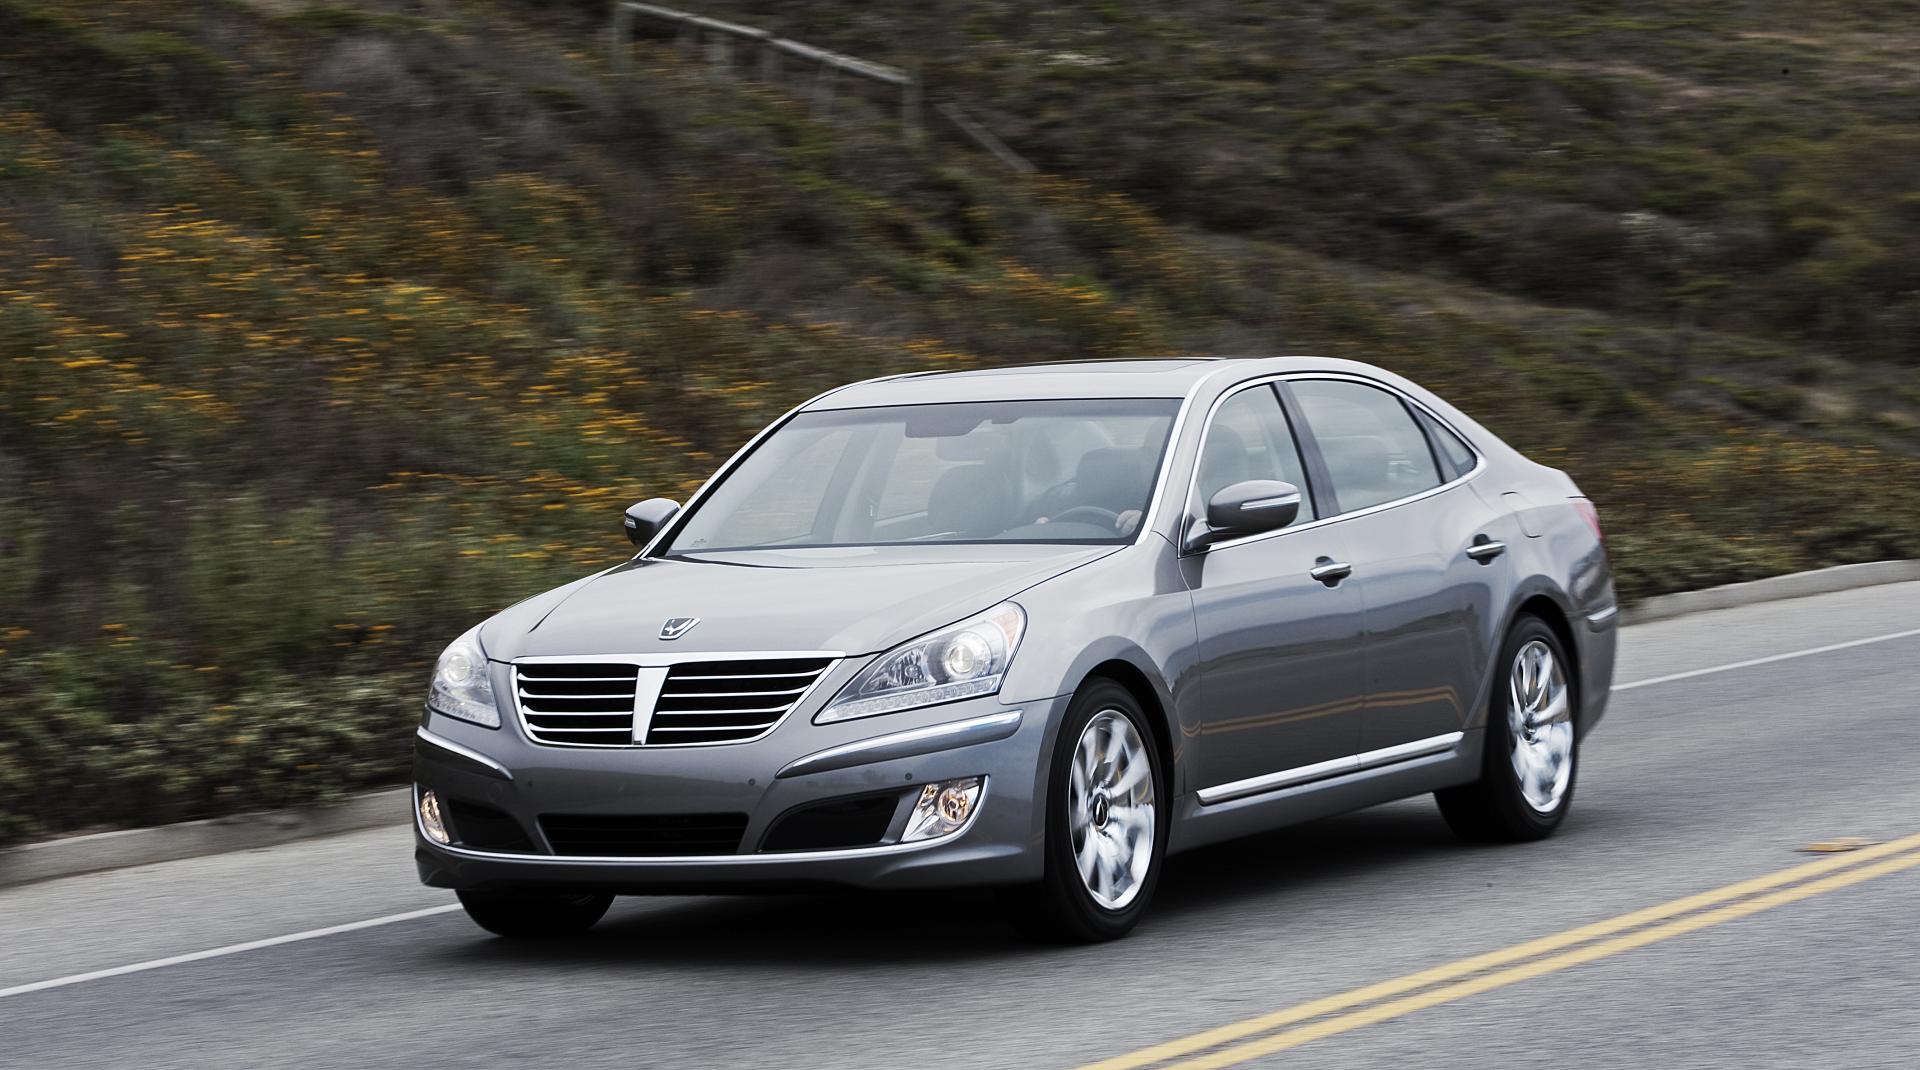 2012 Hyundai Equus News and Information - conceptcarz.com